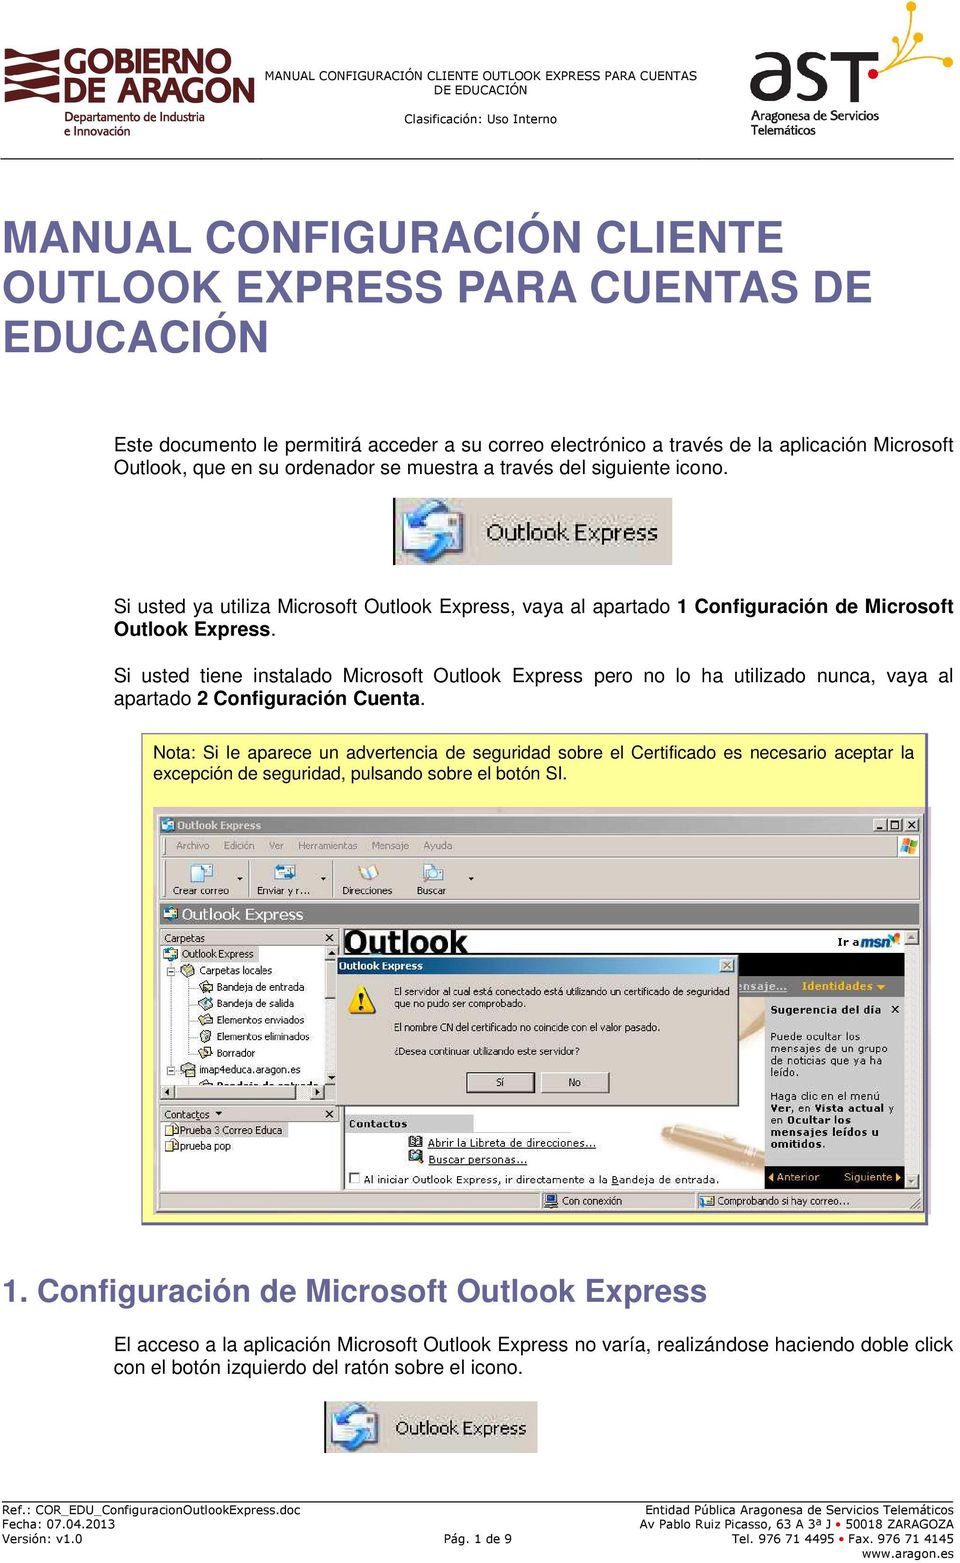 Si usted tiene instalado Microsoft Outlook Express pero no lo ha utilizado nunca, vaya al apartado 2 Configuración Cuenta.